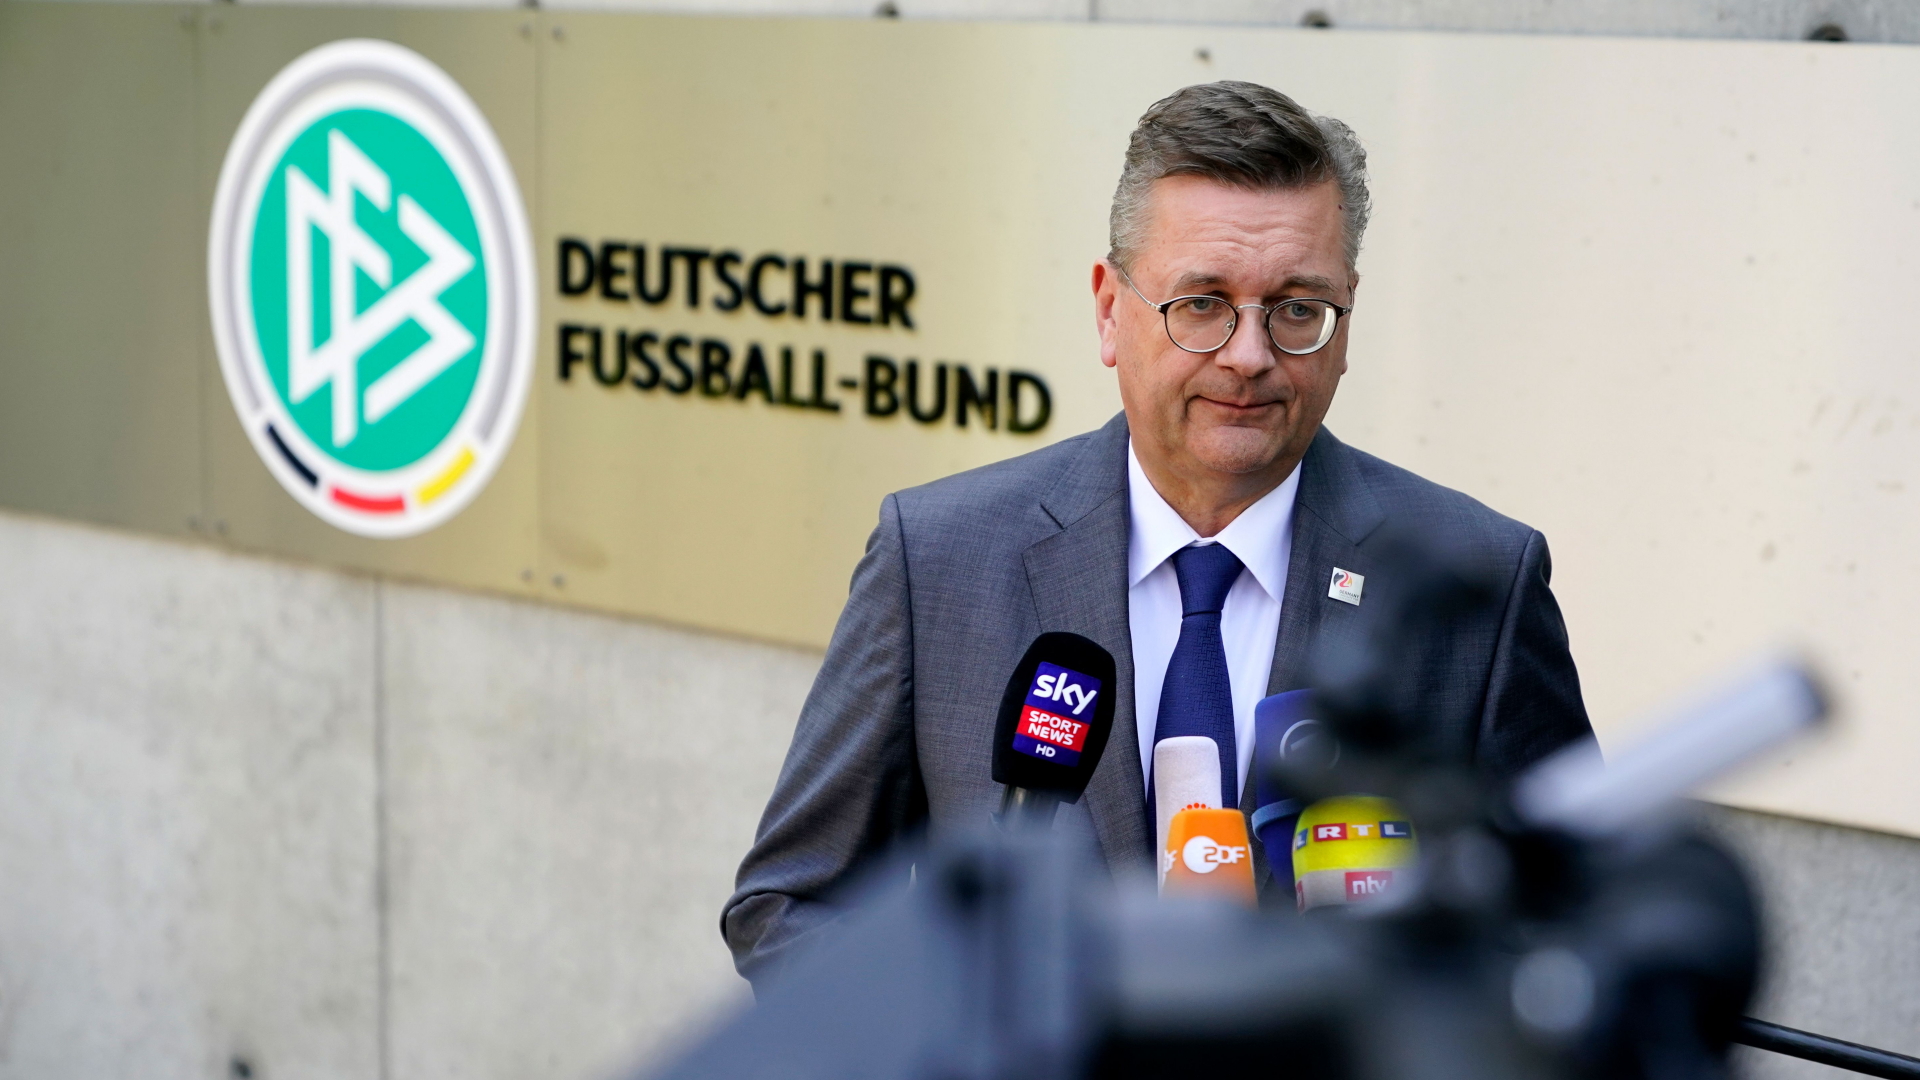 DFB-Präsident Reinhard Grindel